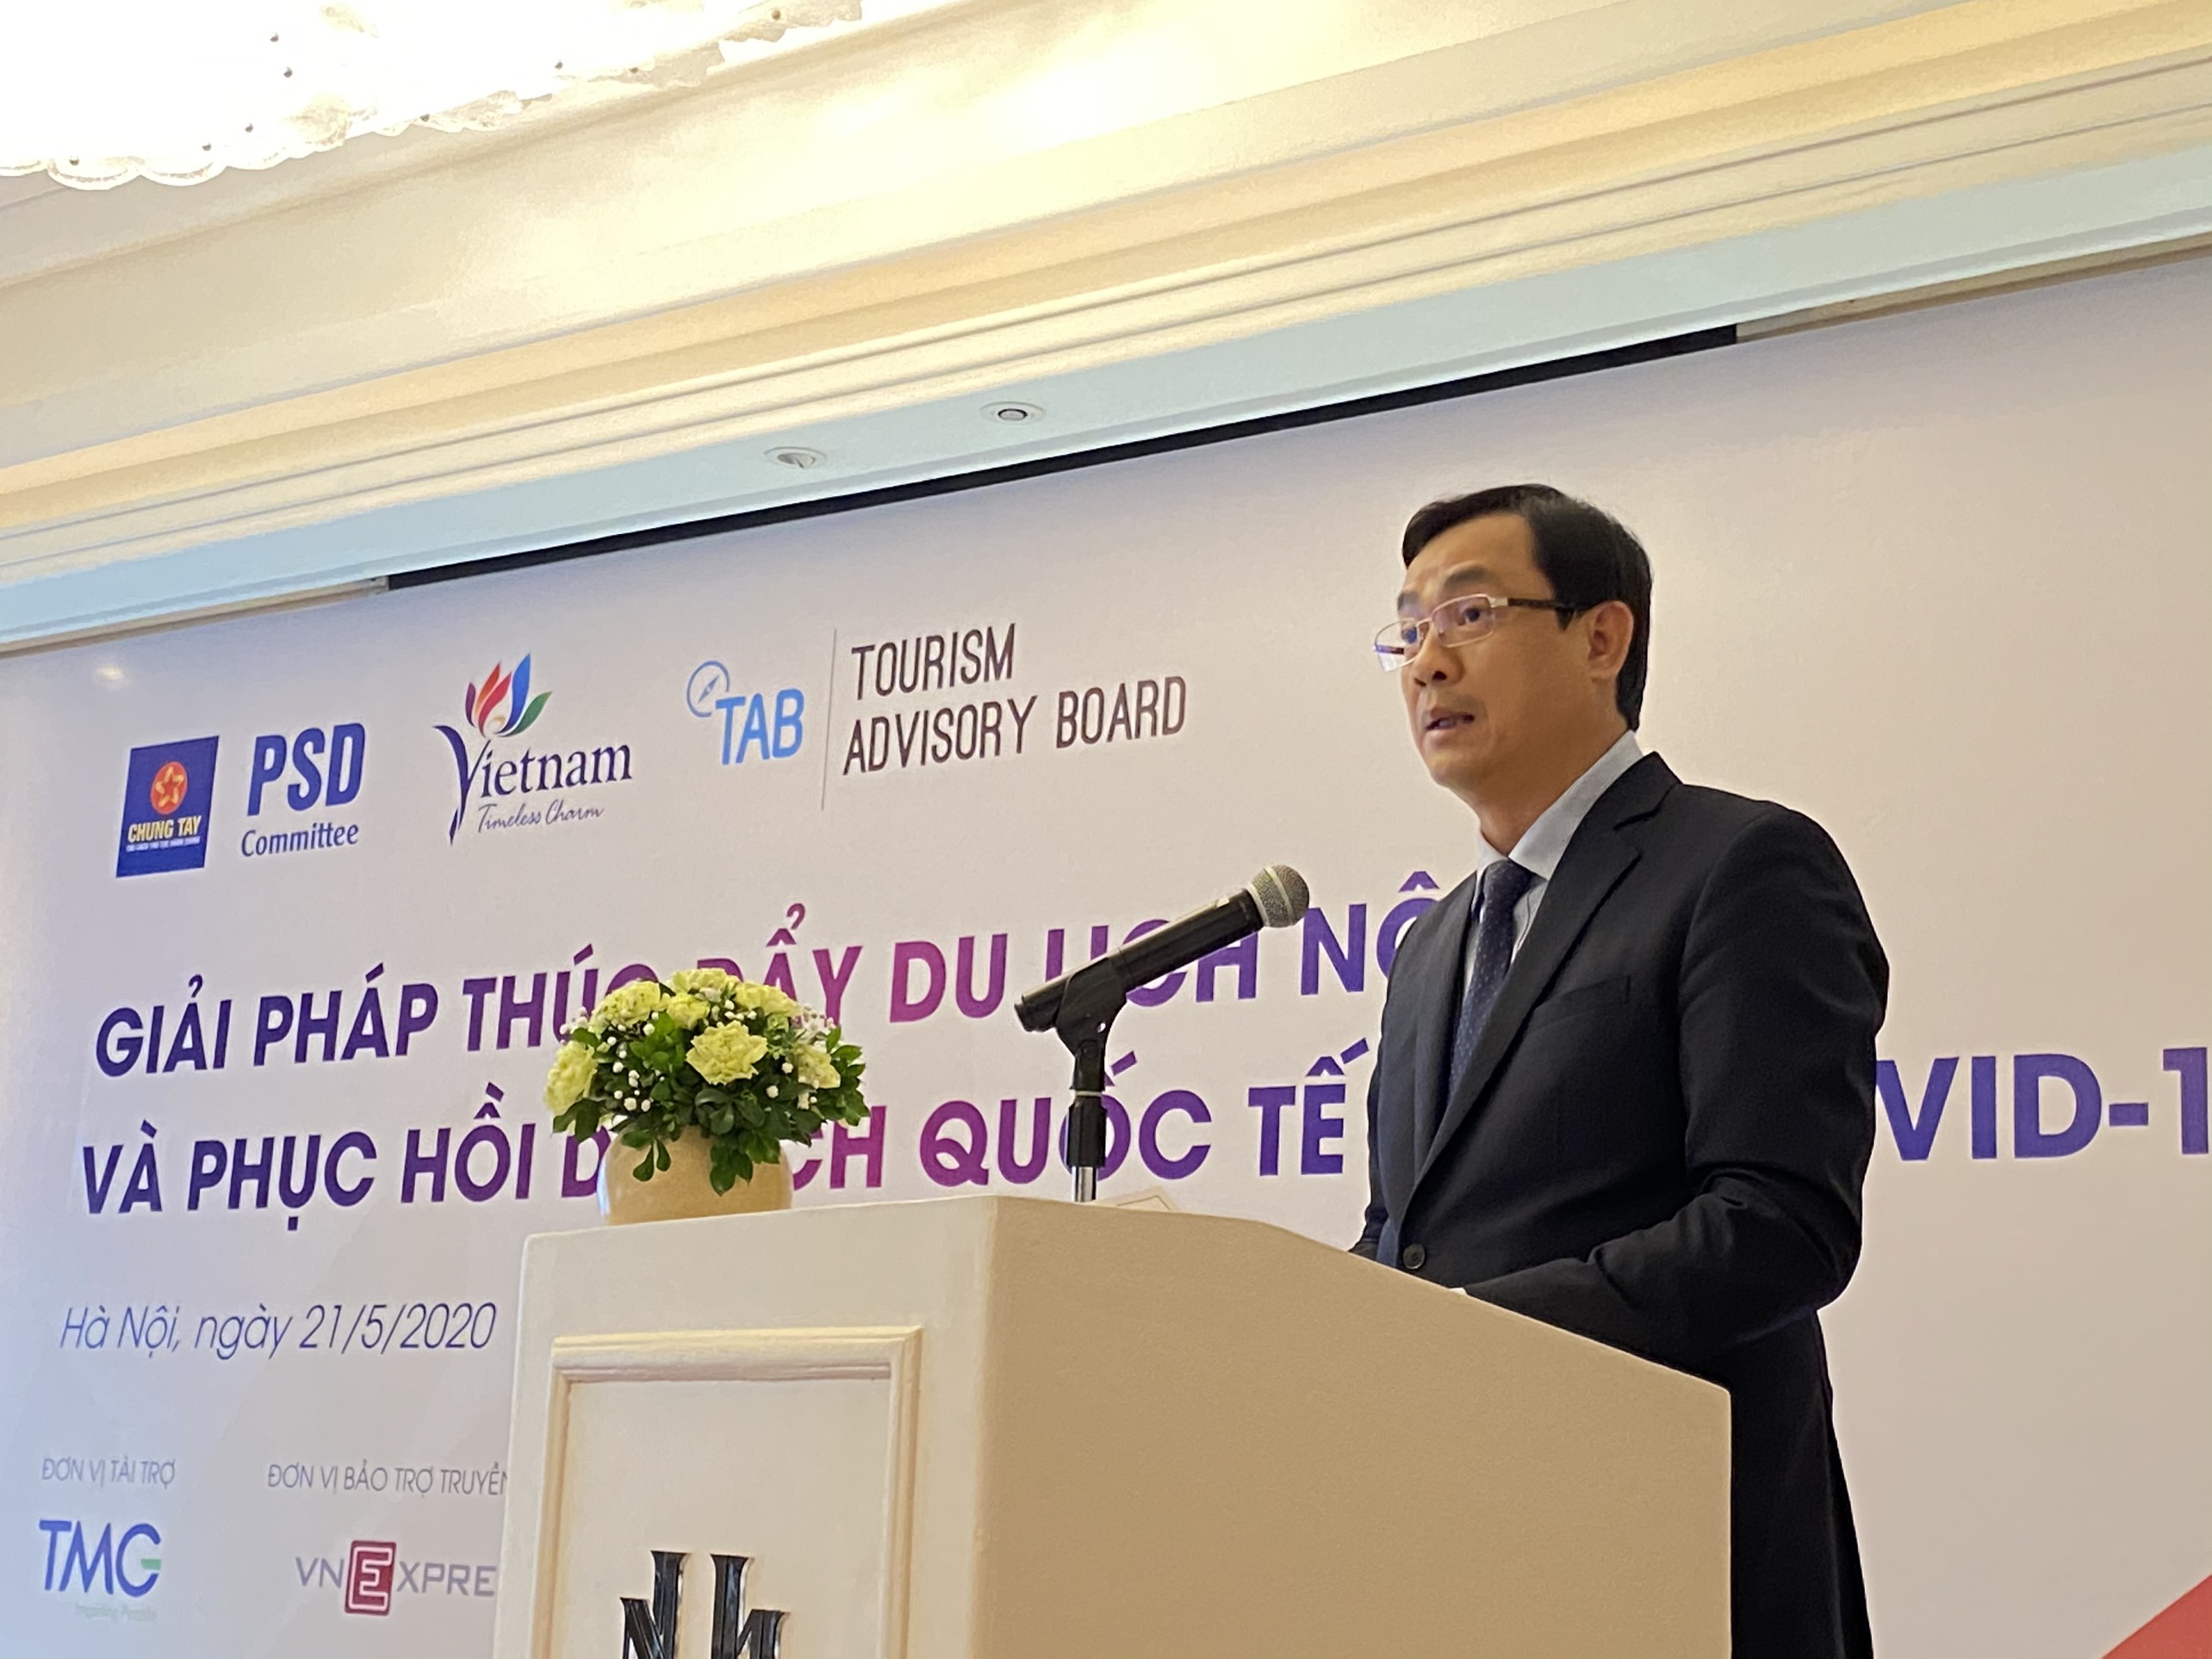 Tổng cục trưởng Nguyễn Trùng Khánh: Các doanh nghiệp lớn cần thể hiện vai trò dẫn dắt trong khôi phục thị trường du lịch